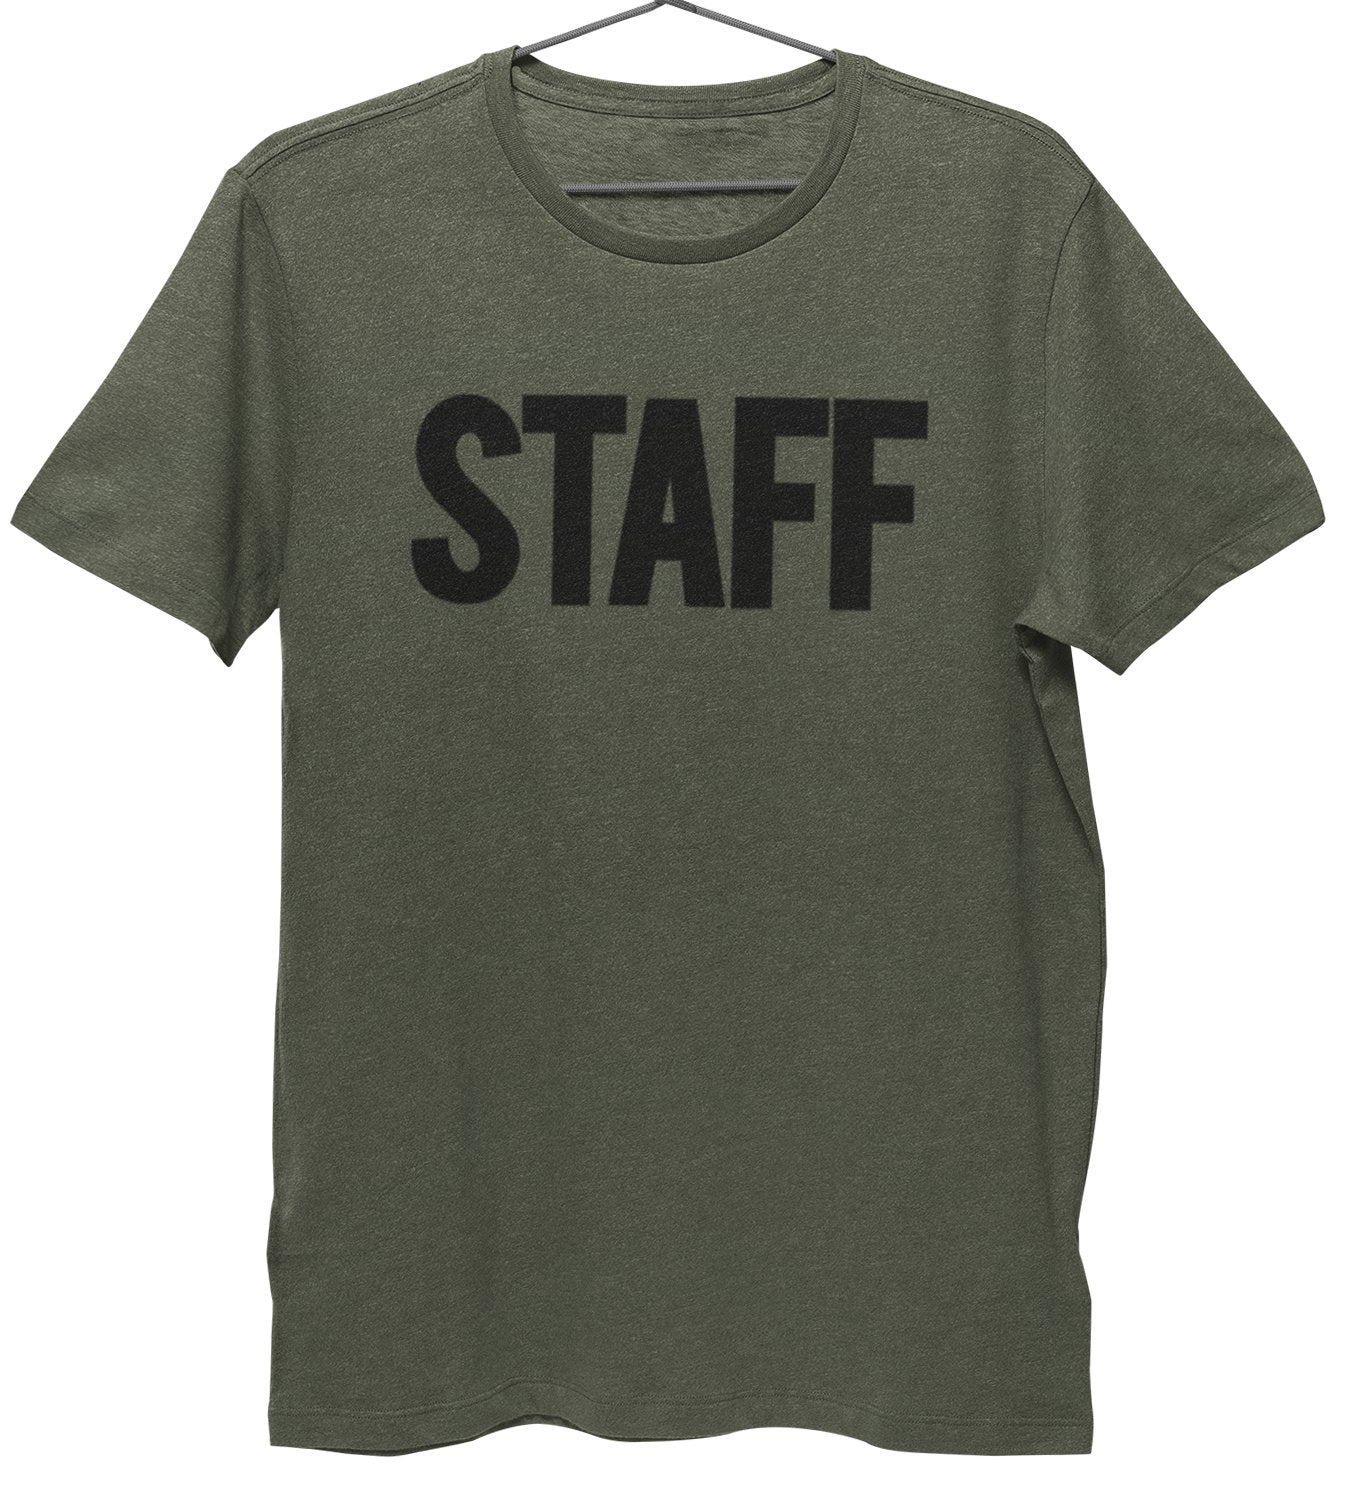 Herren Staff T-Shirt Vorderseite Rückseite Siebdruck T-Shirt (BB, Heather Military Green)